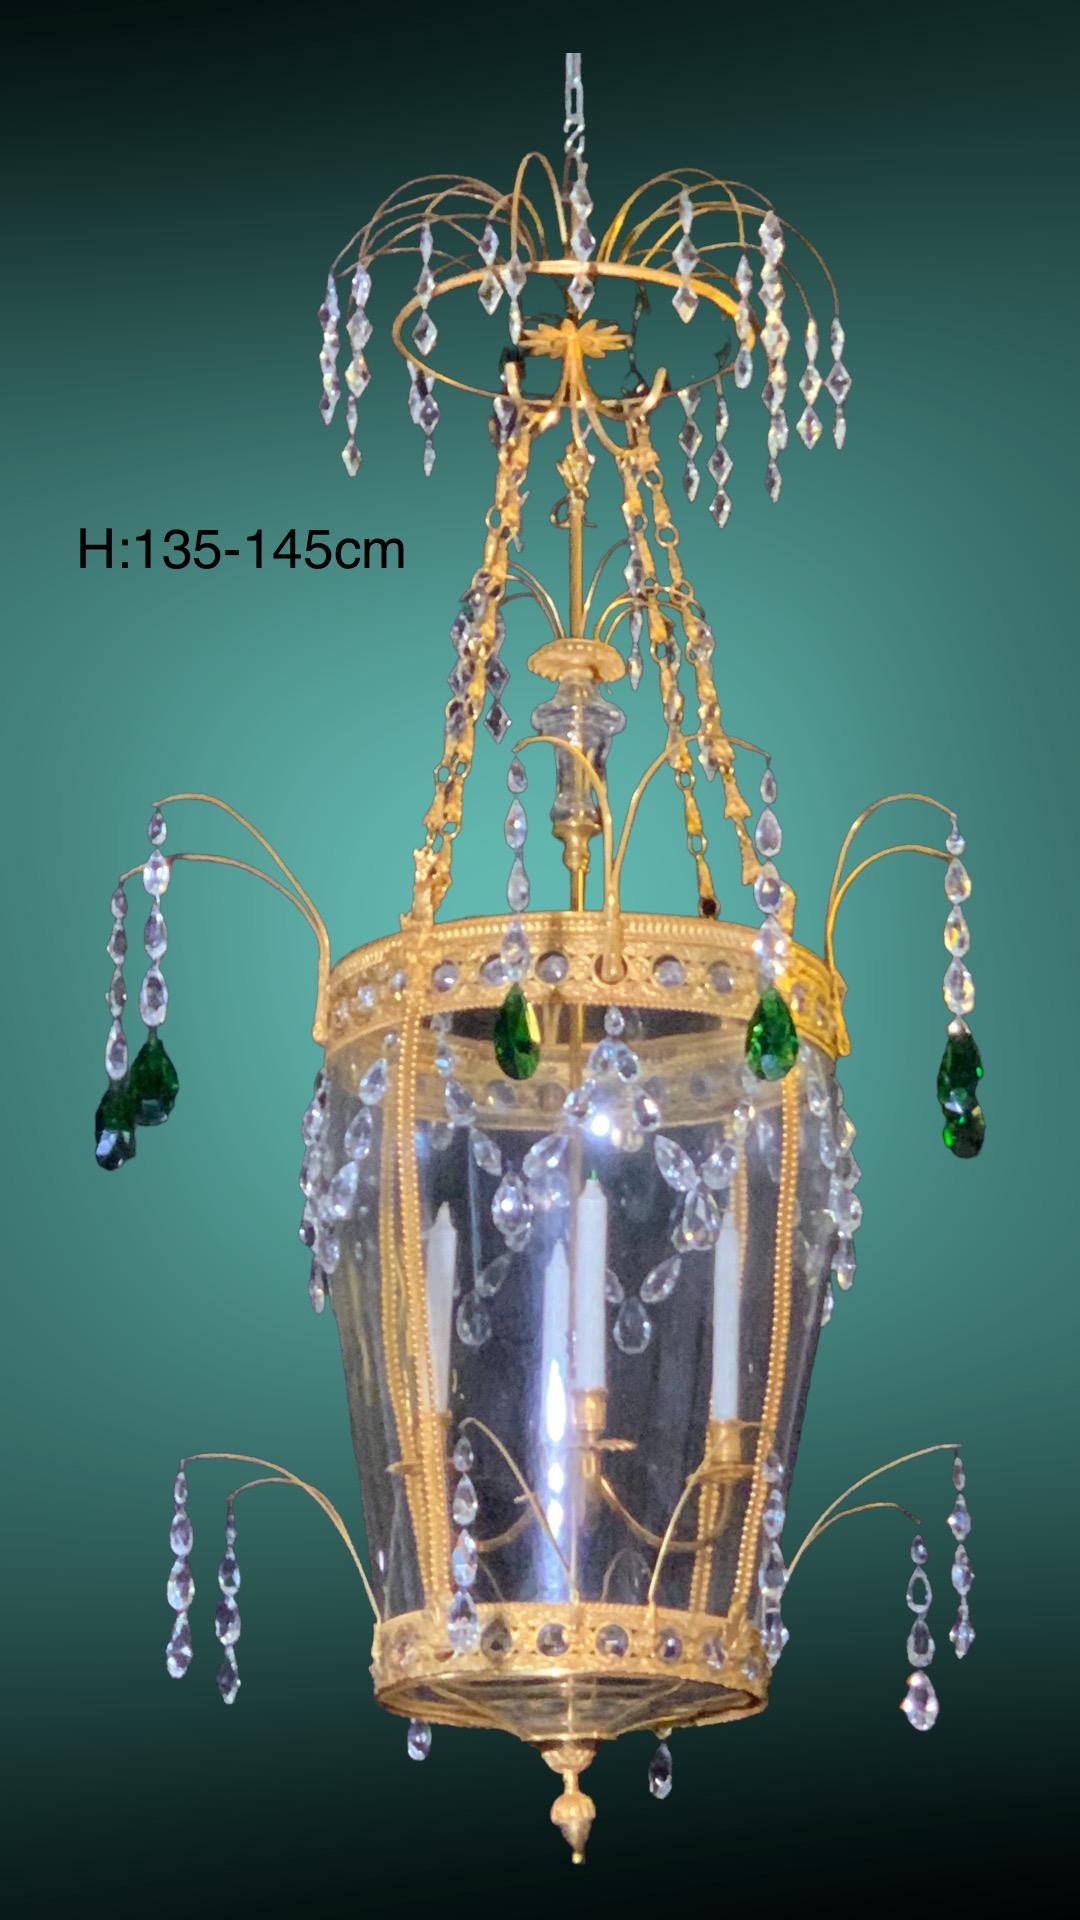 Cette très grande lanterne magnifique (ou lustre aussi)  s'inspire de  la grande Lanterne en  la salle du trône du palais de Pavlovsk. 
Bronze doré au feu et poli à l'agate. 
Cristal et verre émeraude
5  des lumières,
La hauteur peut être adaptée